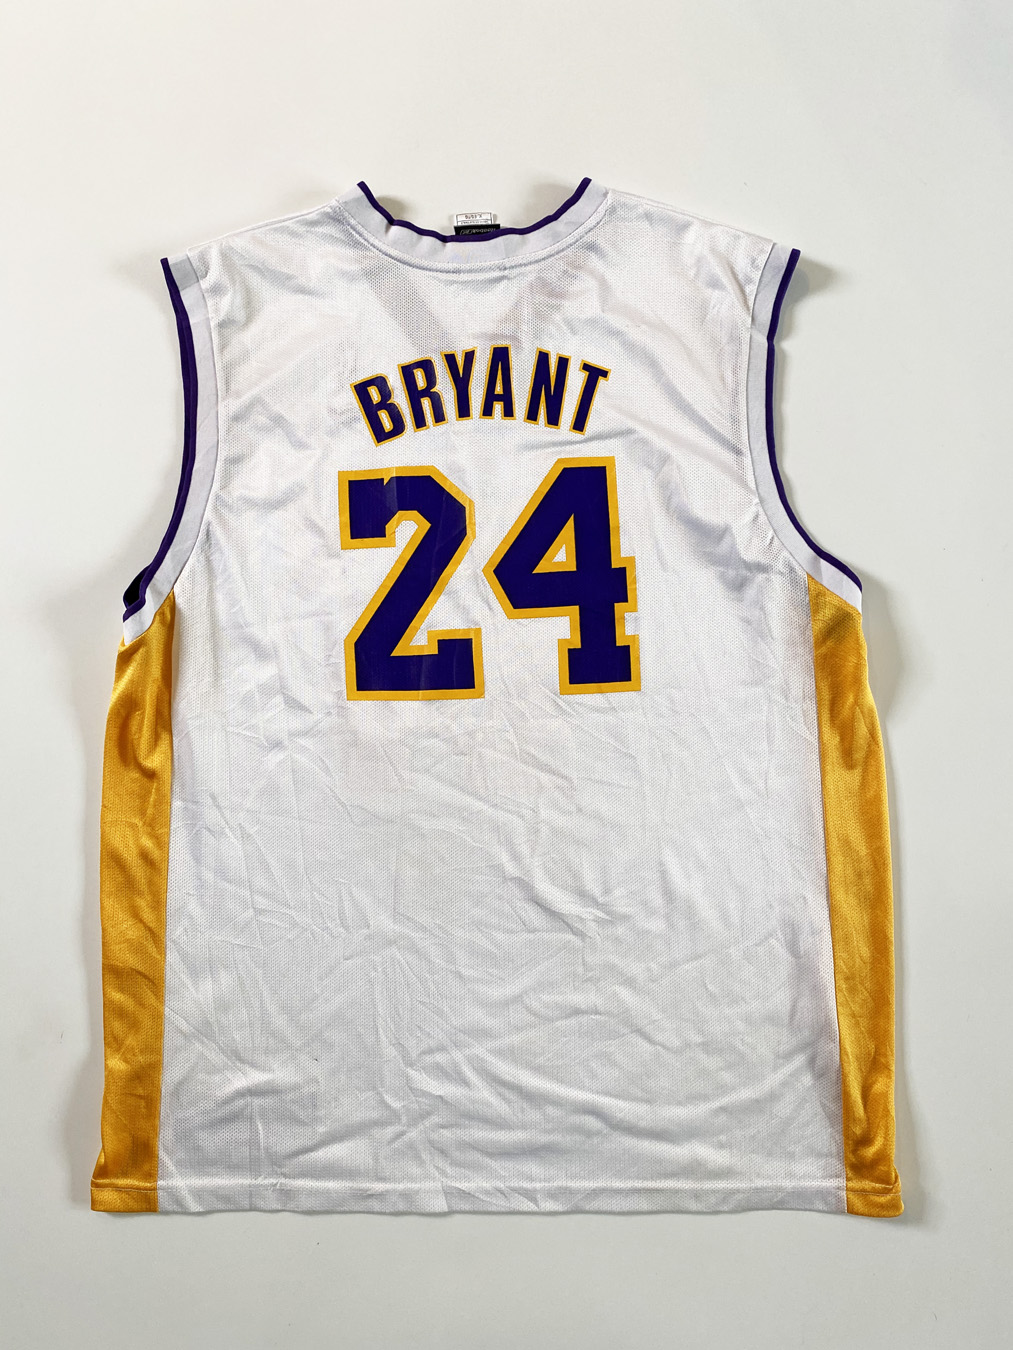 Kobe Bryant LA Lakers White Reebok 24 Jersey XL